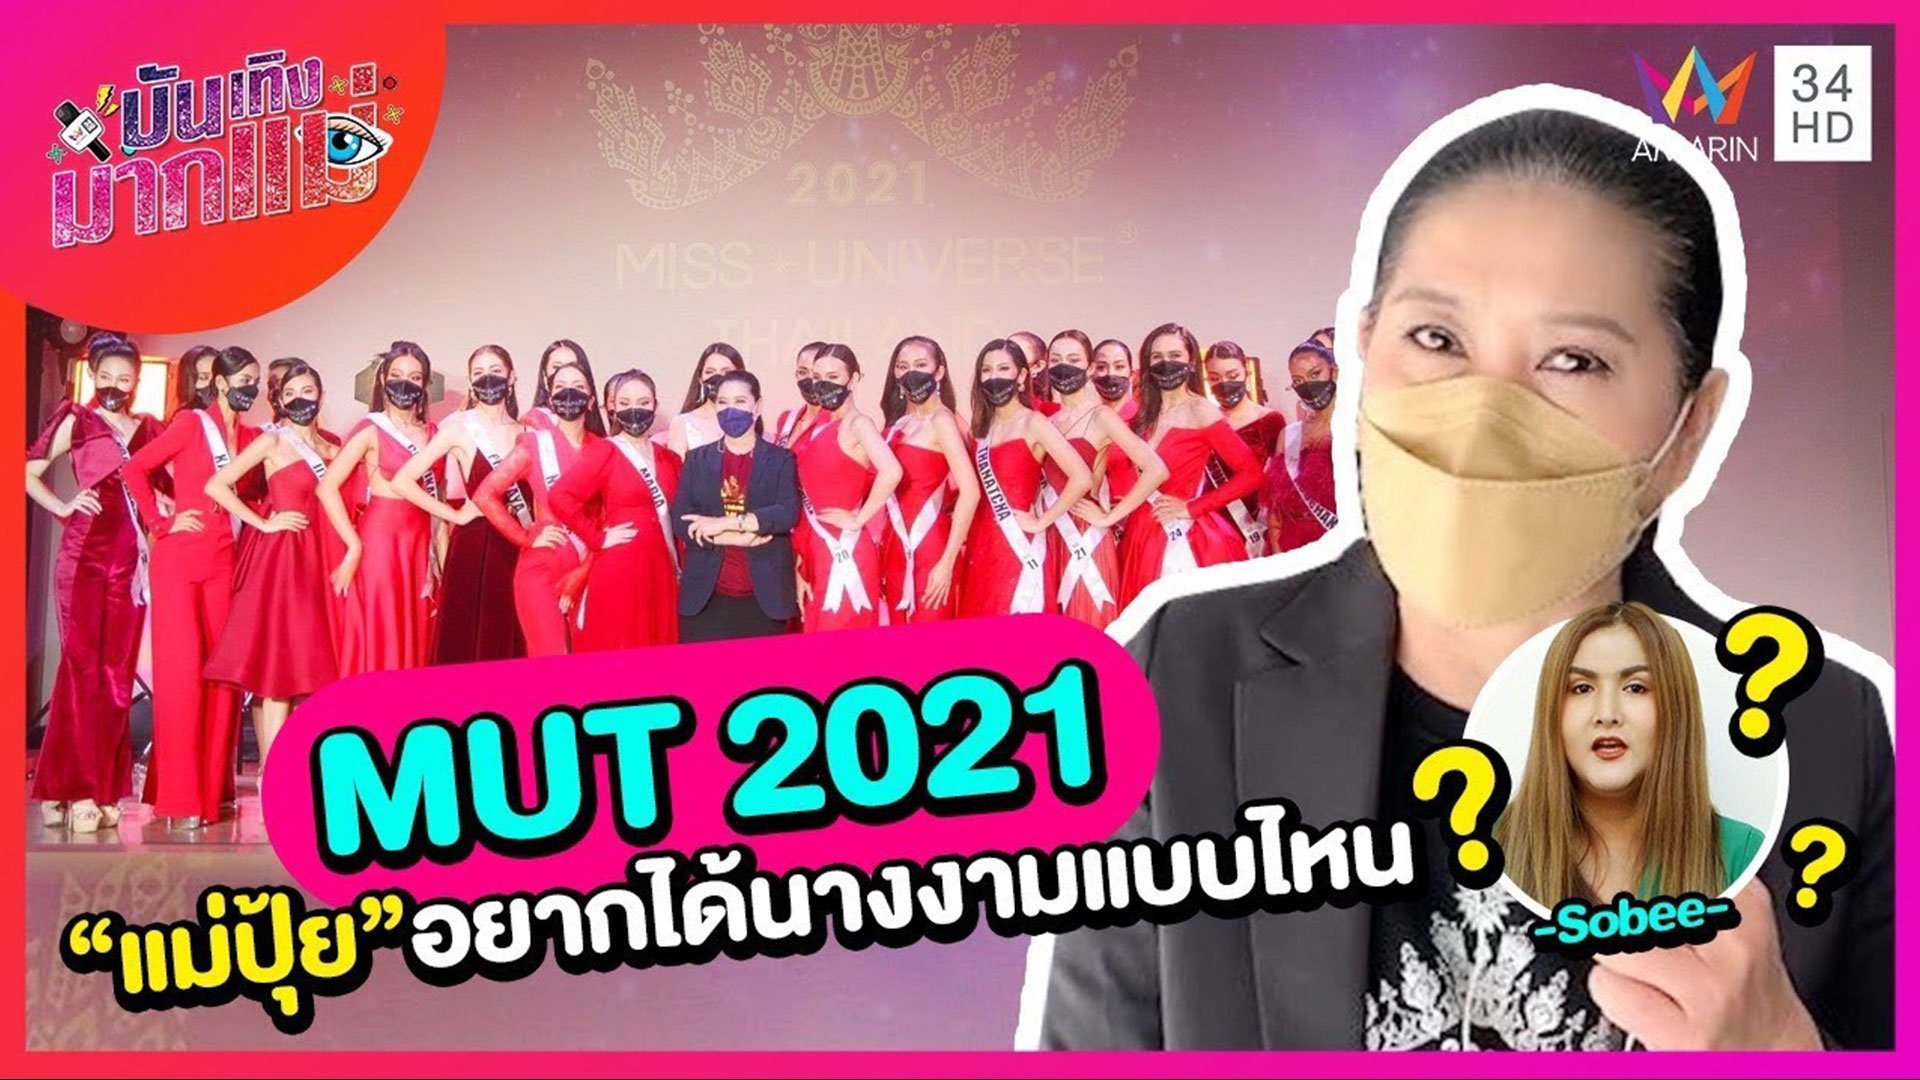 บันเทิงมากแม่ | EP.36 Miss Universe Thailand 2021 “แม่ปุ้ย” อยากได้นางงามแบบไหน? | 15 ต.ค. 64 | AMARIN TVHD34